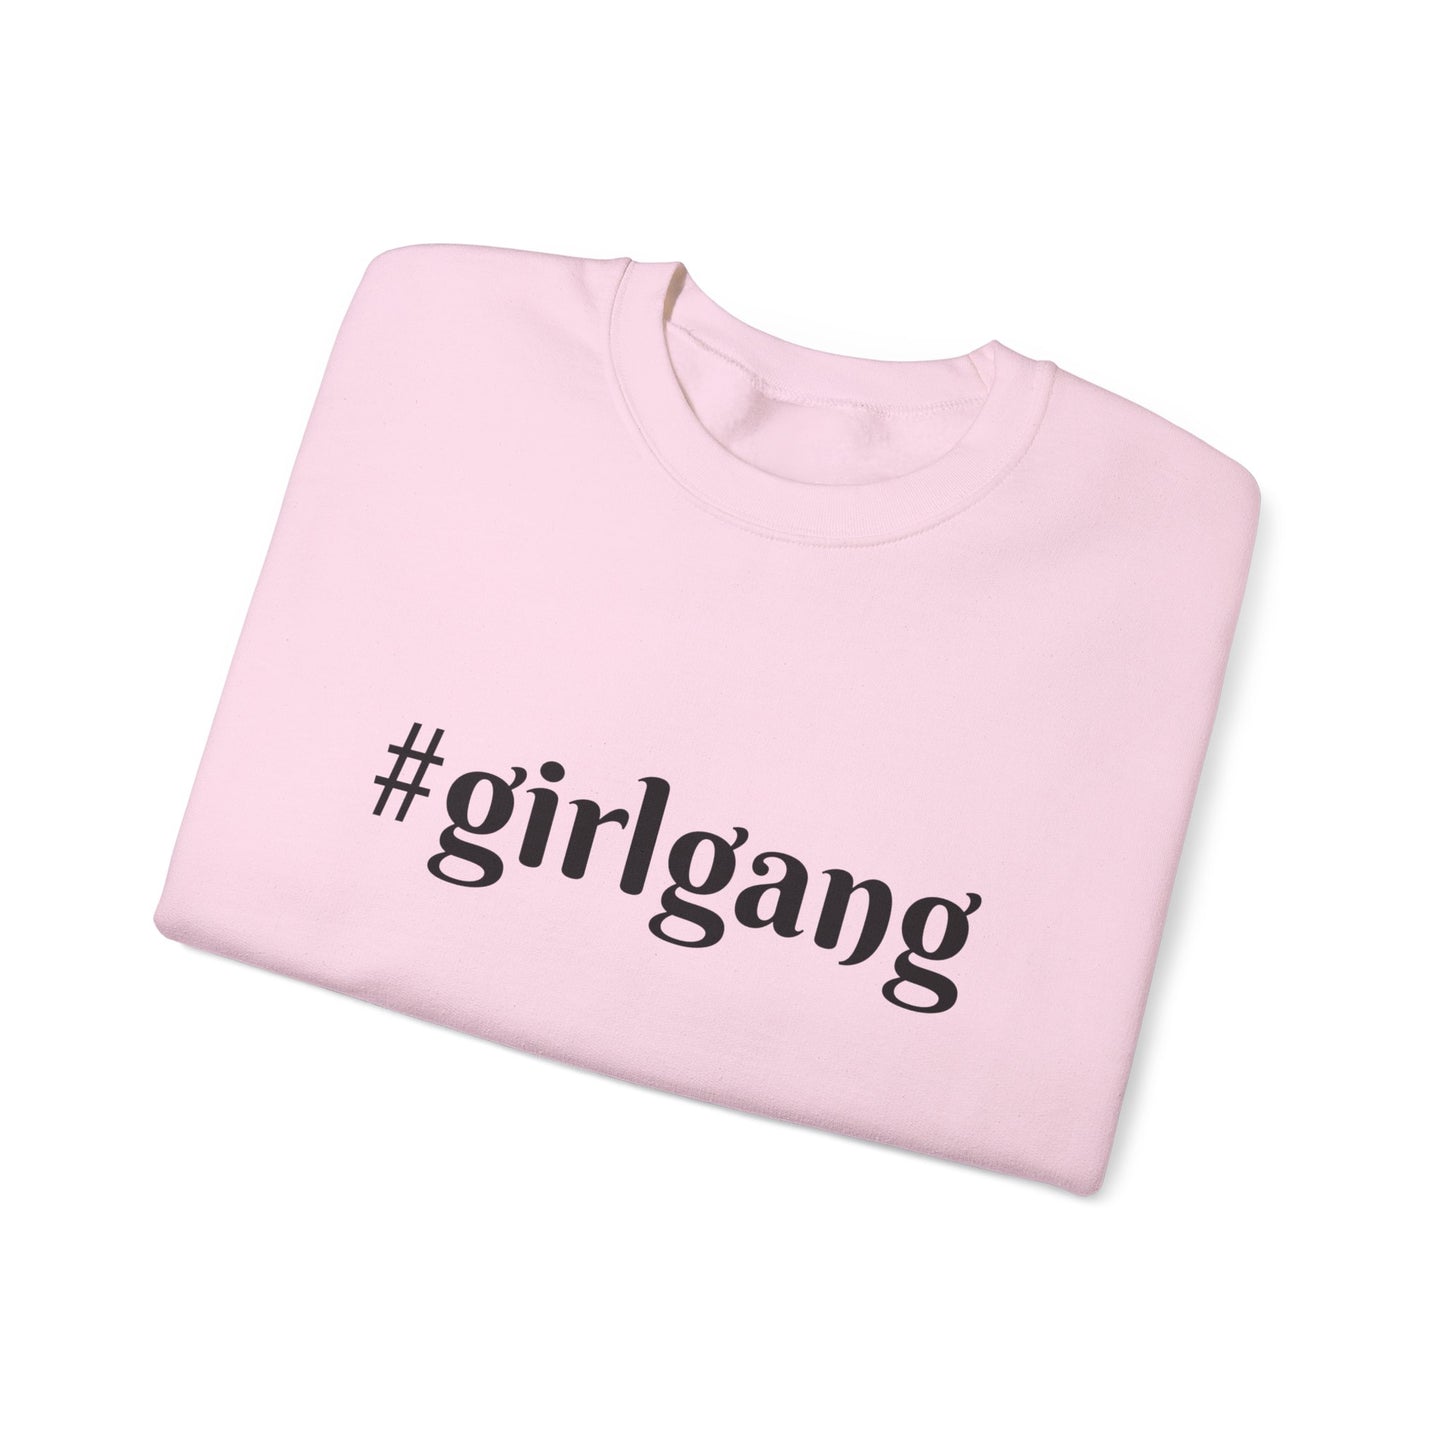 #girlgang Crewneck Sweatshirt